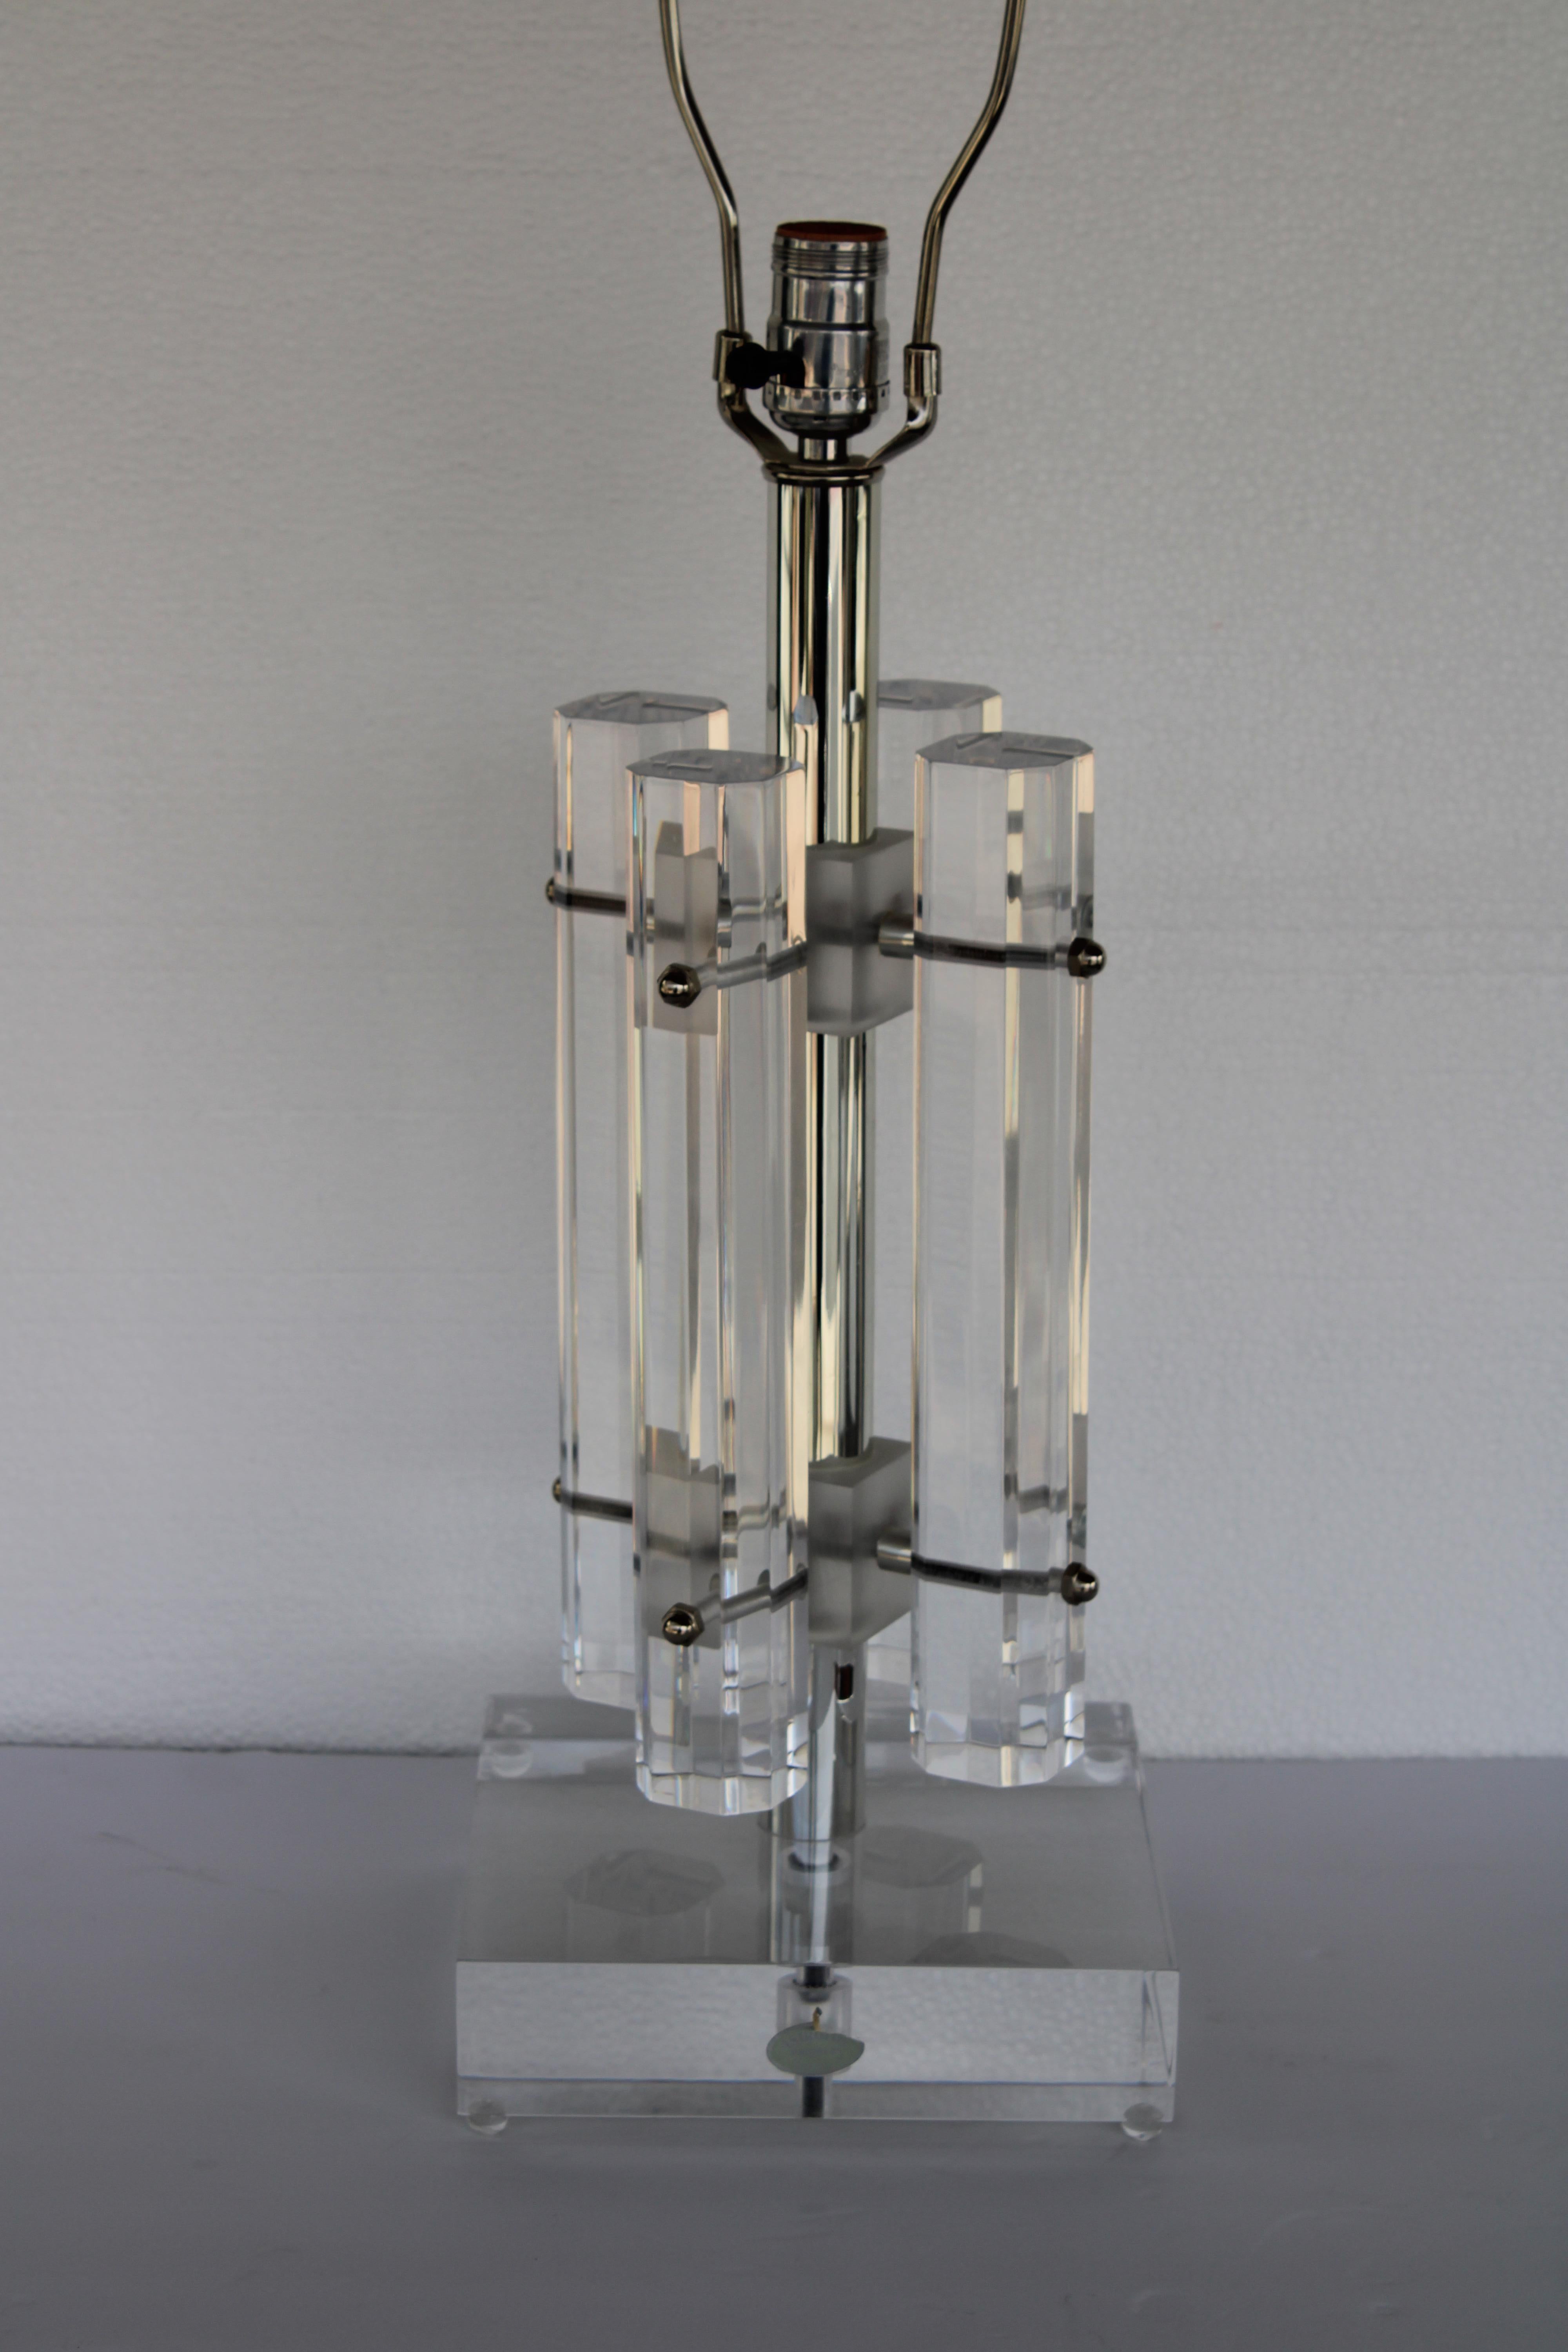 Lucite-Lampe von Astrolite für die Ritts Company, Los Angeles, CA.  Der Lampenfuß ist 8